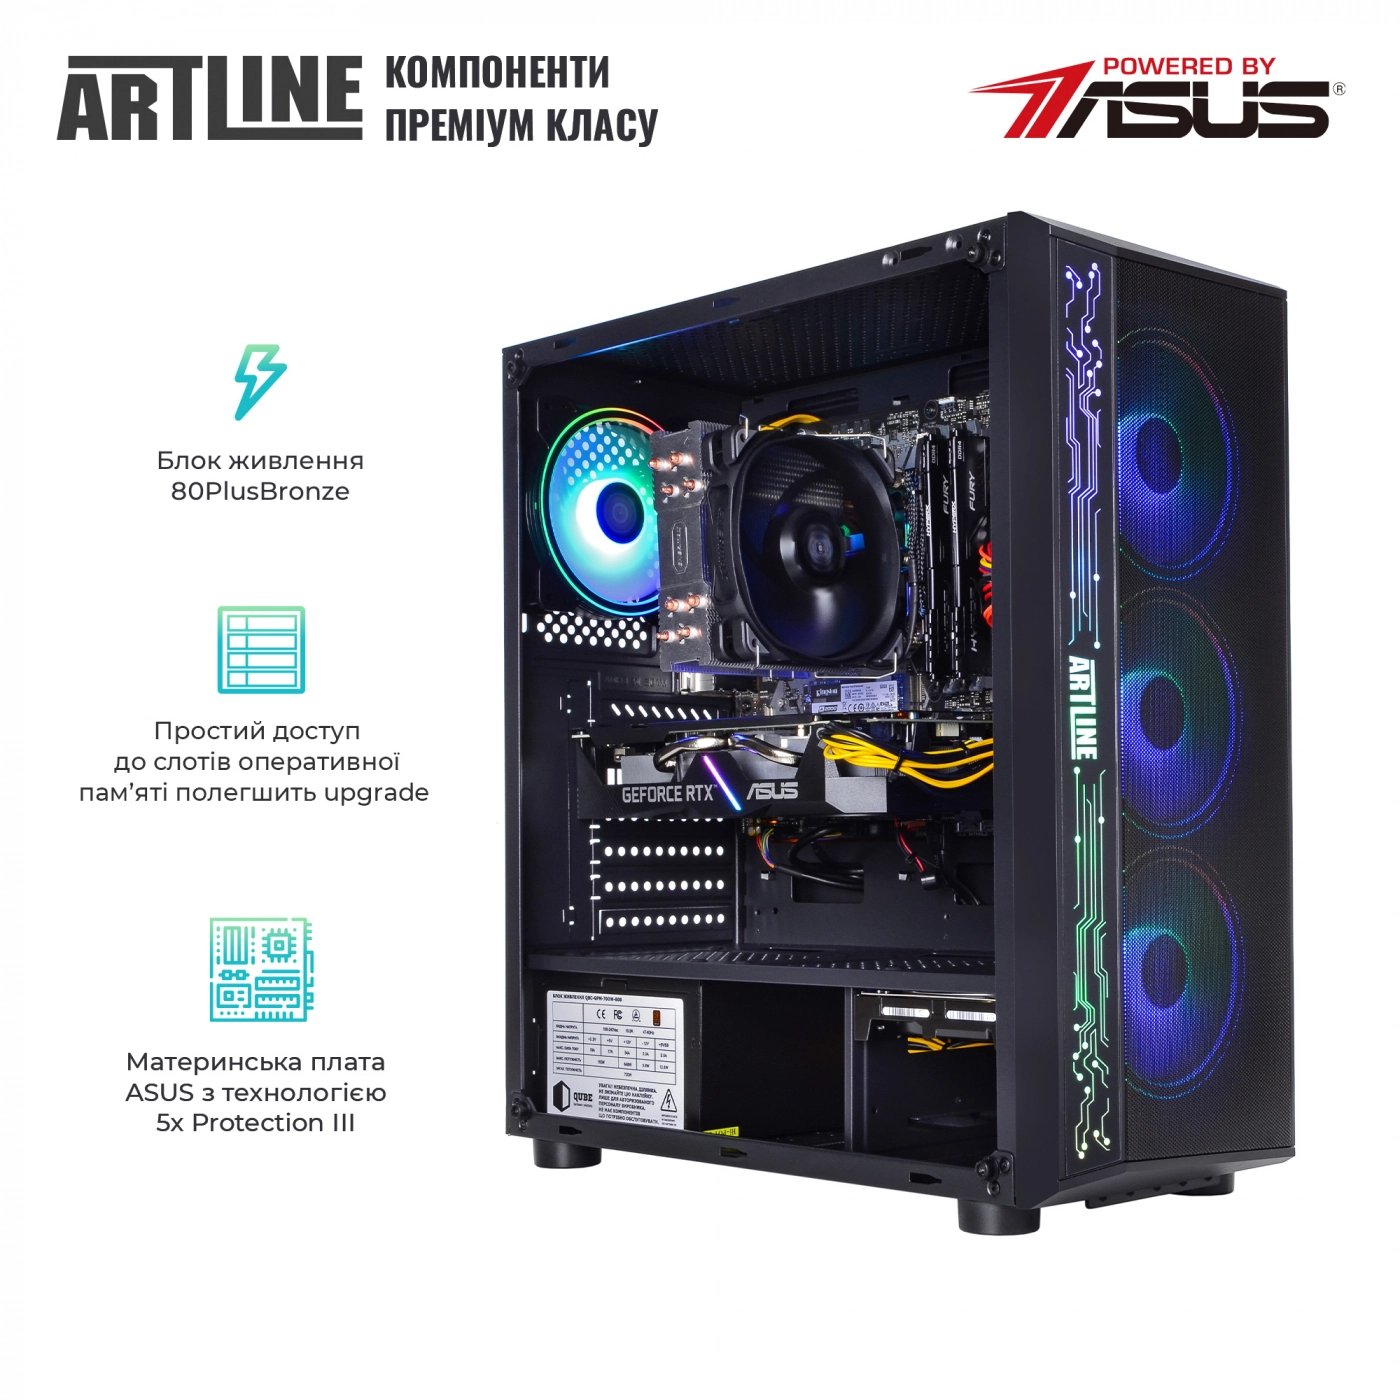 Купить Компьютер ARTLINE Gaming X77v56 - фото 3